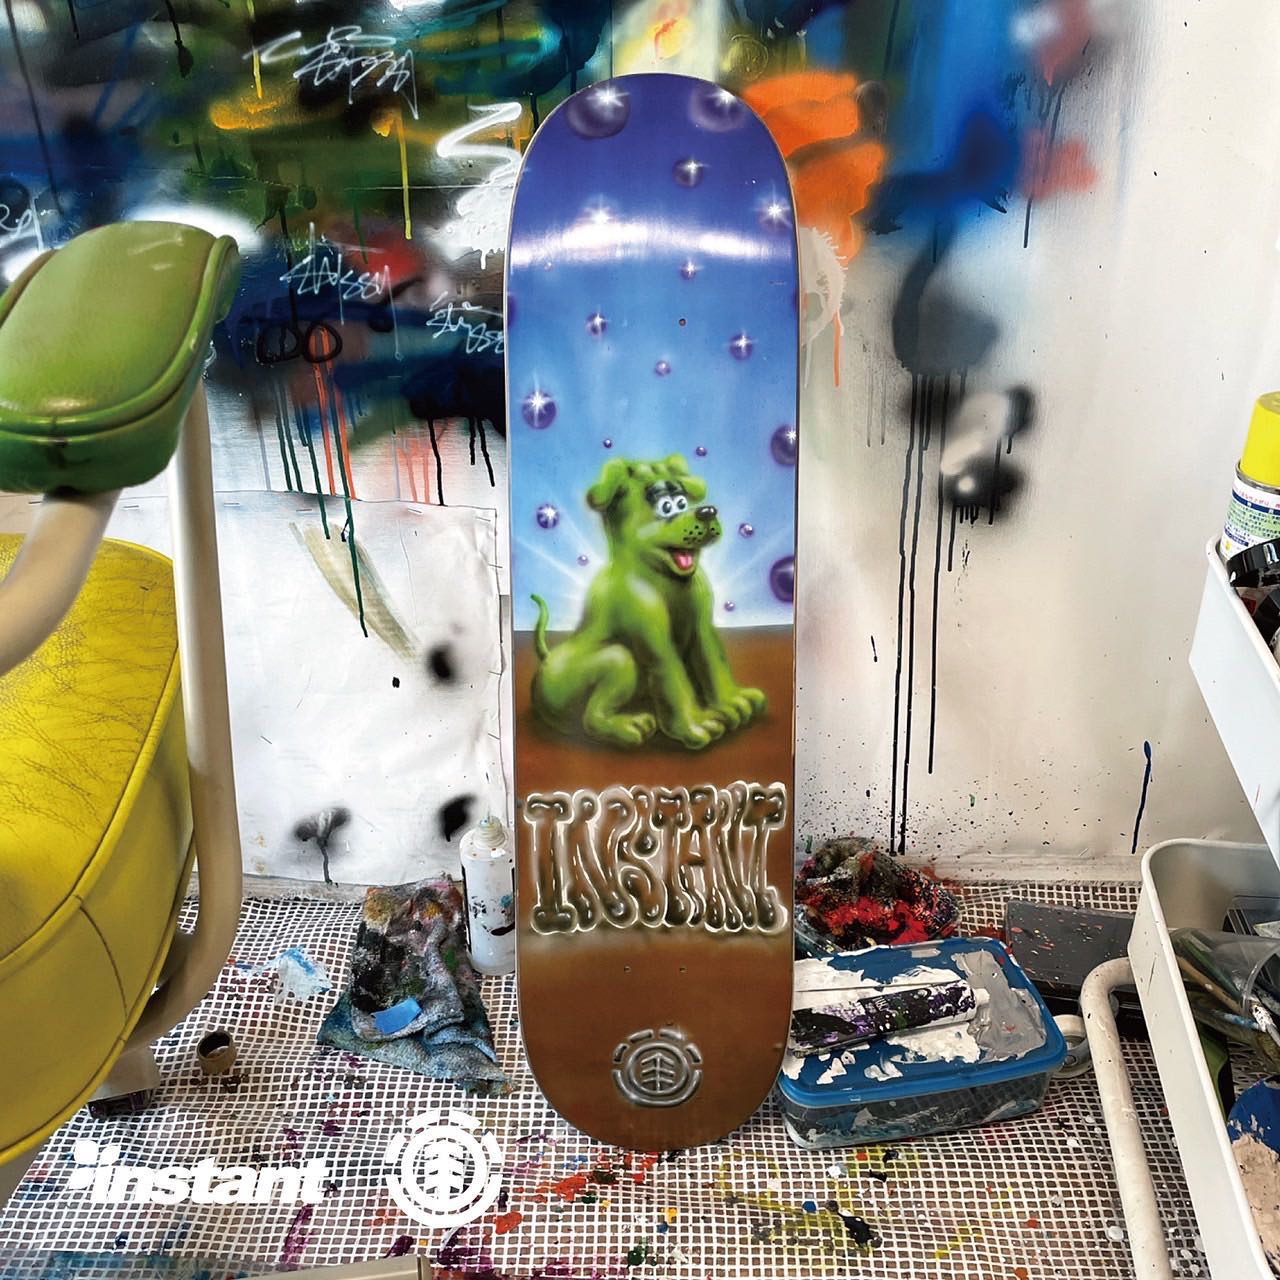 Element Skateboards 30周年を記念した世界４ヵ国でのコラボレーション企画@elementjapan 🤝 @instant_skateboards アーティスト @ryotadaimon を起用したコラボレーションデッキを7/31(日)AM10時よりInstant全店とWEBストアにて発売いたします。デッキの売上から石造りのスケートセクションを制作、そのスケートセクションを千葉ストアとゆかりのあるSOGA SKATEPARKに寄付し、スケーターに還元することが今回のコラボレーション企画の目的です。コラボレーションデッキのアートワークはもともとInstantのローカルで古くから繋がりのある、今大注目のアーティスト"DAIMON"が手掛けております。コラボレーションデッキは全50本限定となりますのでお早めに#newledgejam#localyoursupport #elementjapan #elementskateboards #instantskateshop